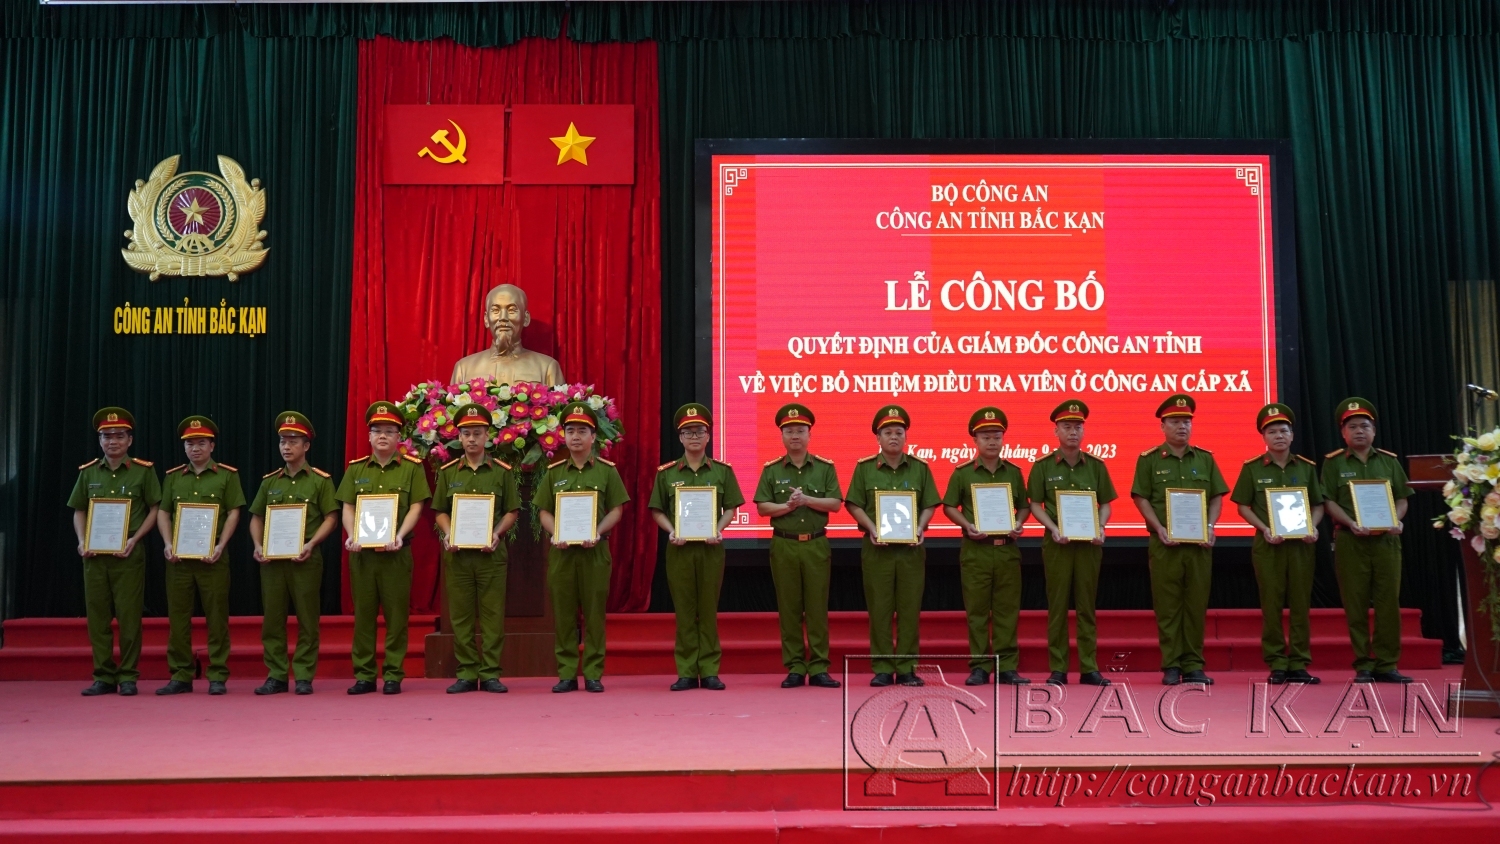 Thượng tá Lê Hồng Giang Phó Giám đốc công an tỉnh, Thủ Trưởng cơ quan Cảnh sát điều tra Công an tỉnh trao quyết định bổ nhiệm Điều tra viên sơ cấp